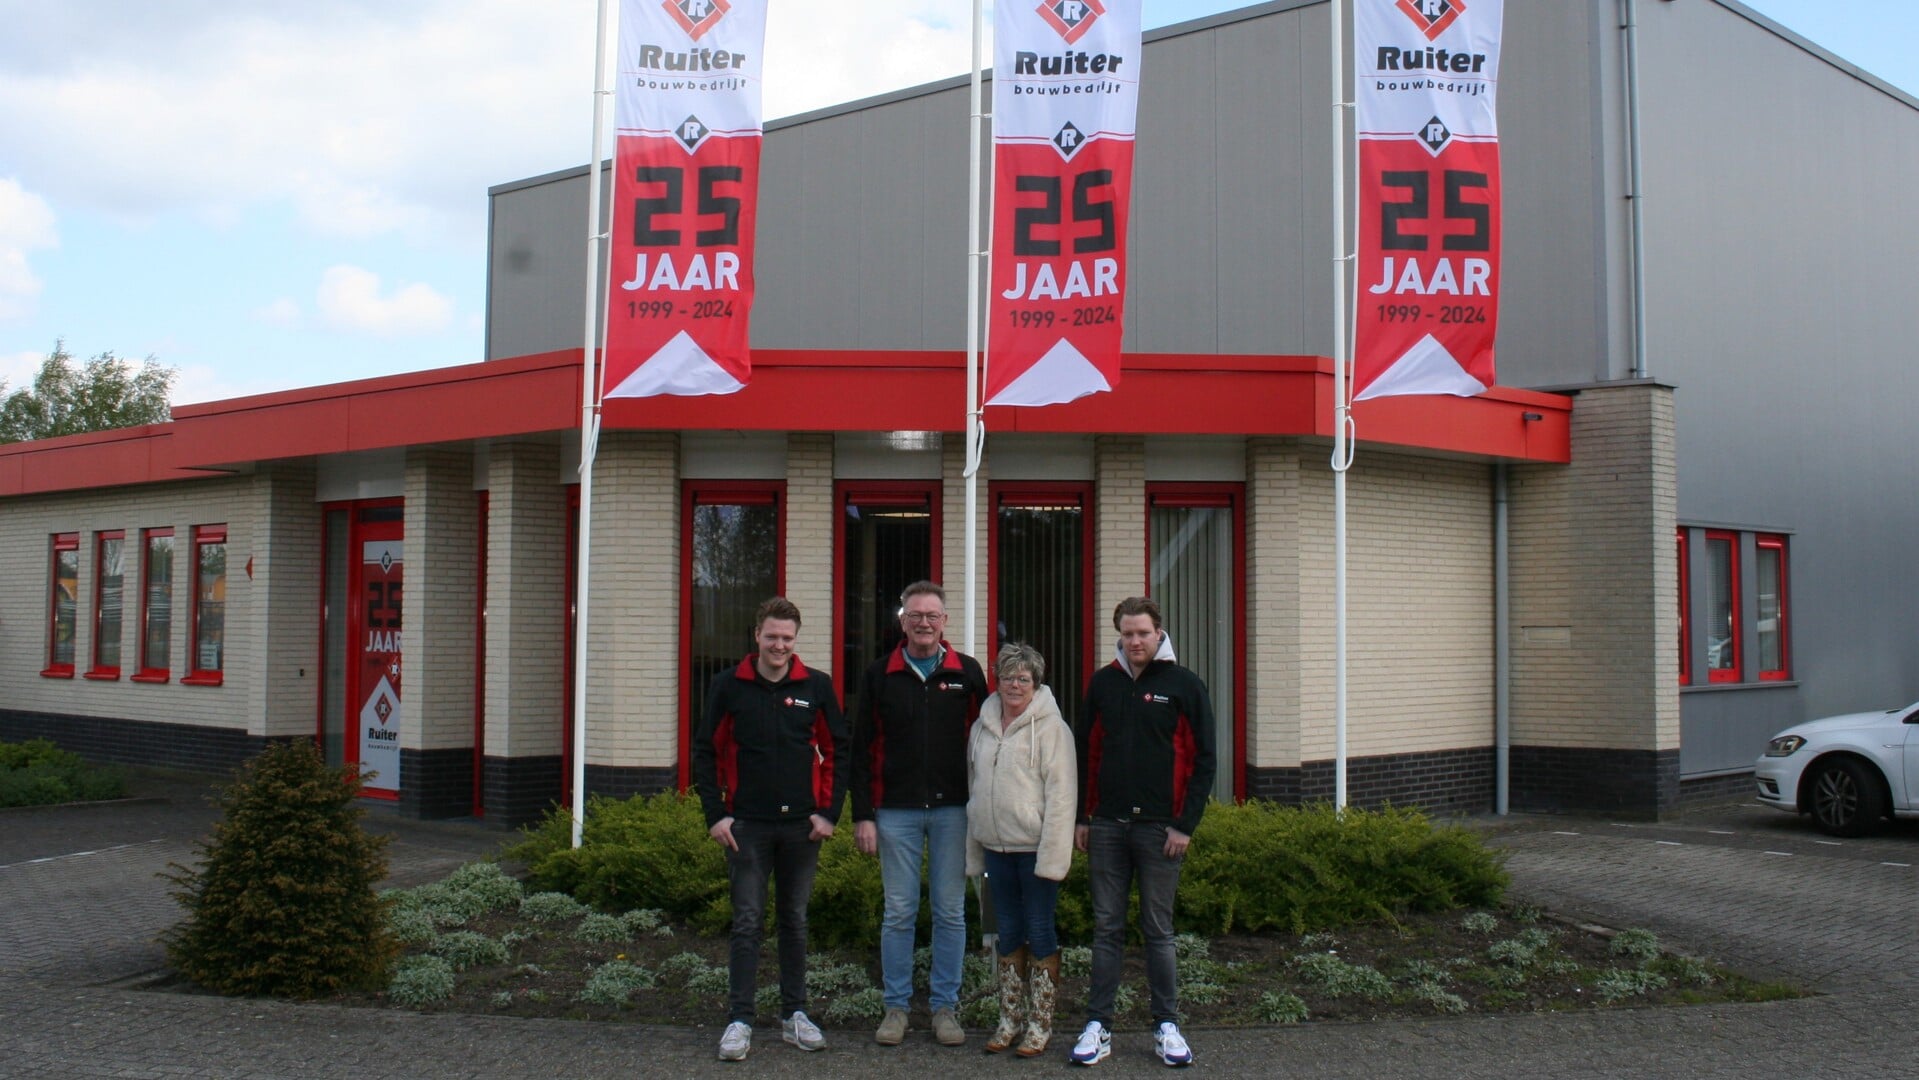 René en José geflankeerd door hun zonen, voor hun bedrijfspand in Haarle. Trots dat ze al 25 jaar met veel plezier dit bedrijf runnen.